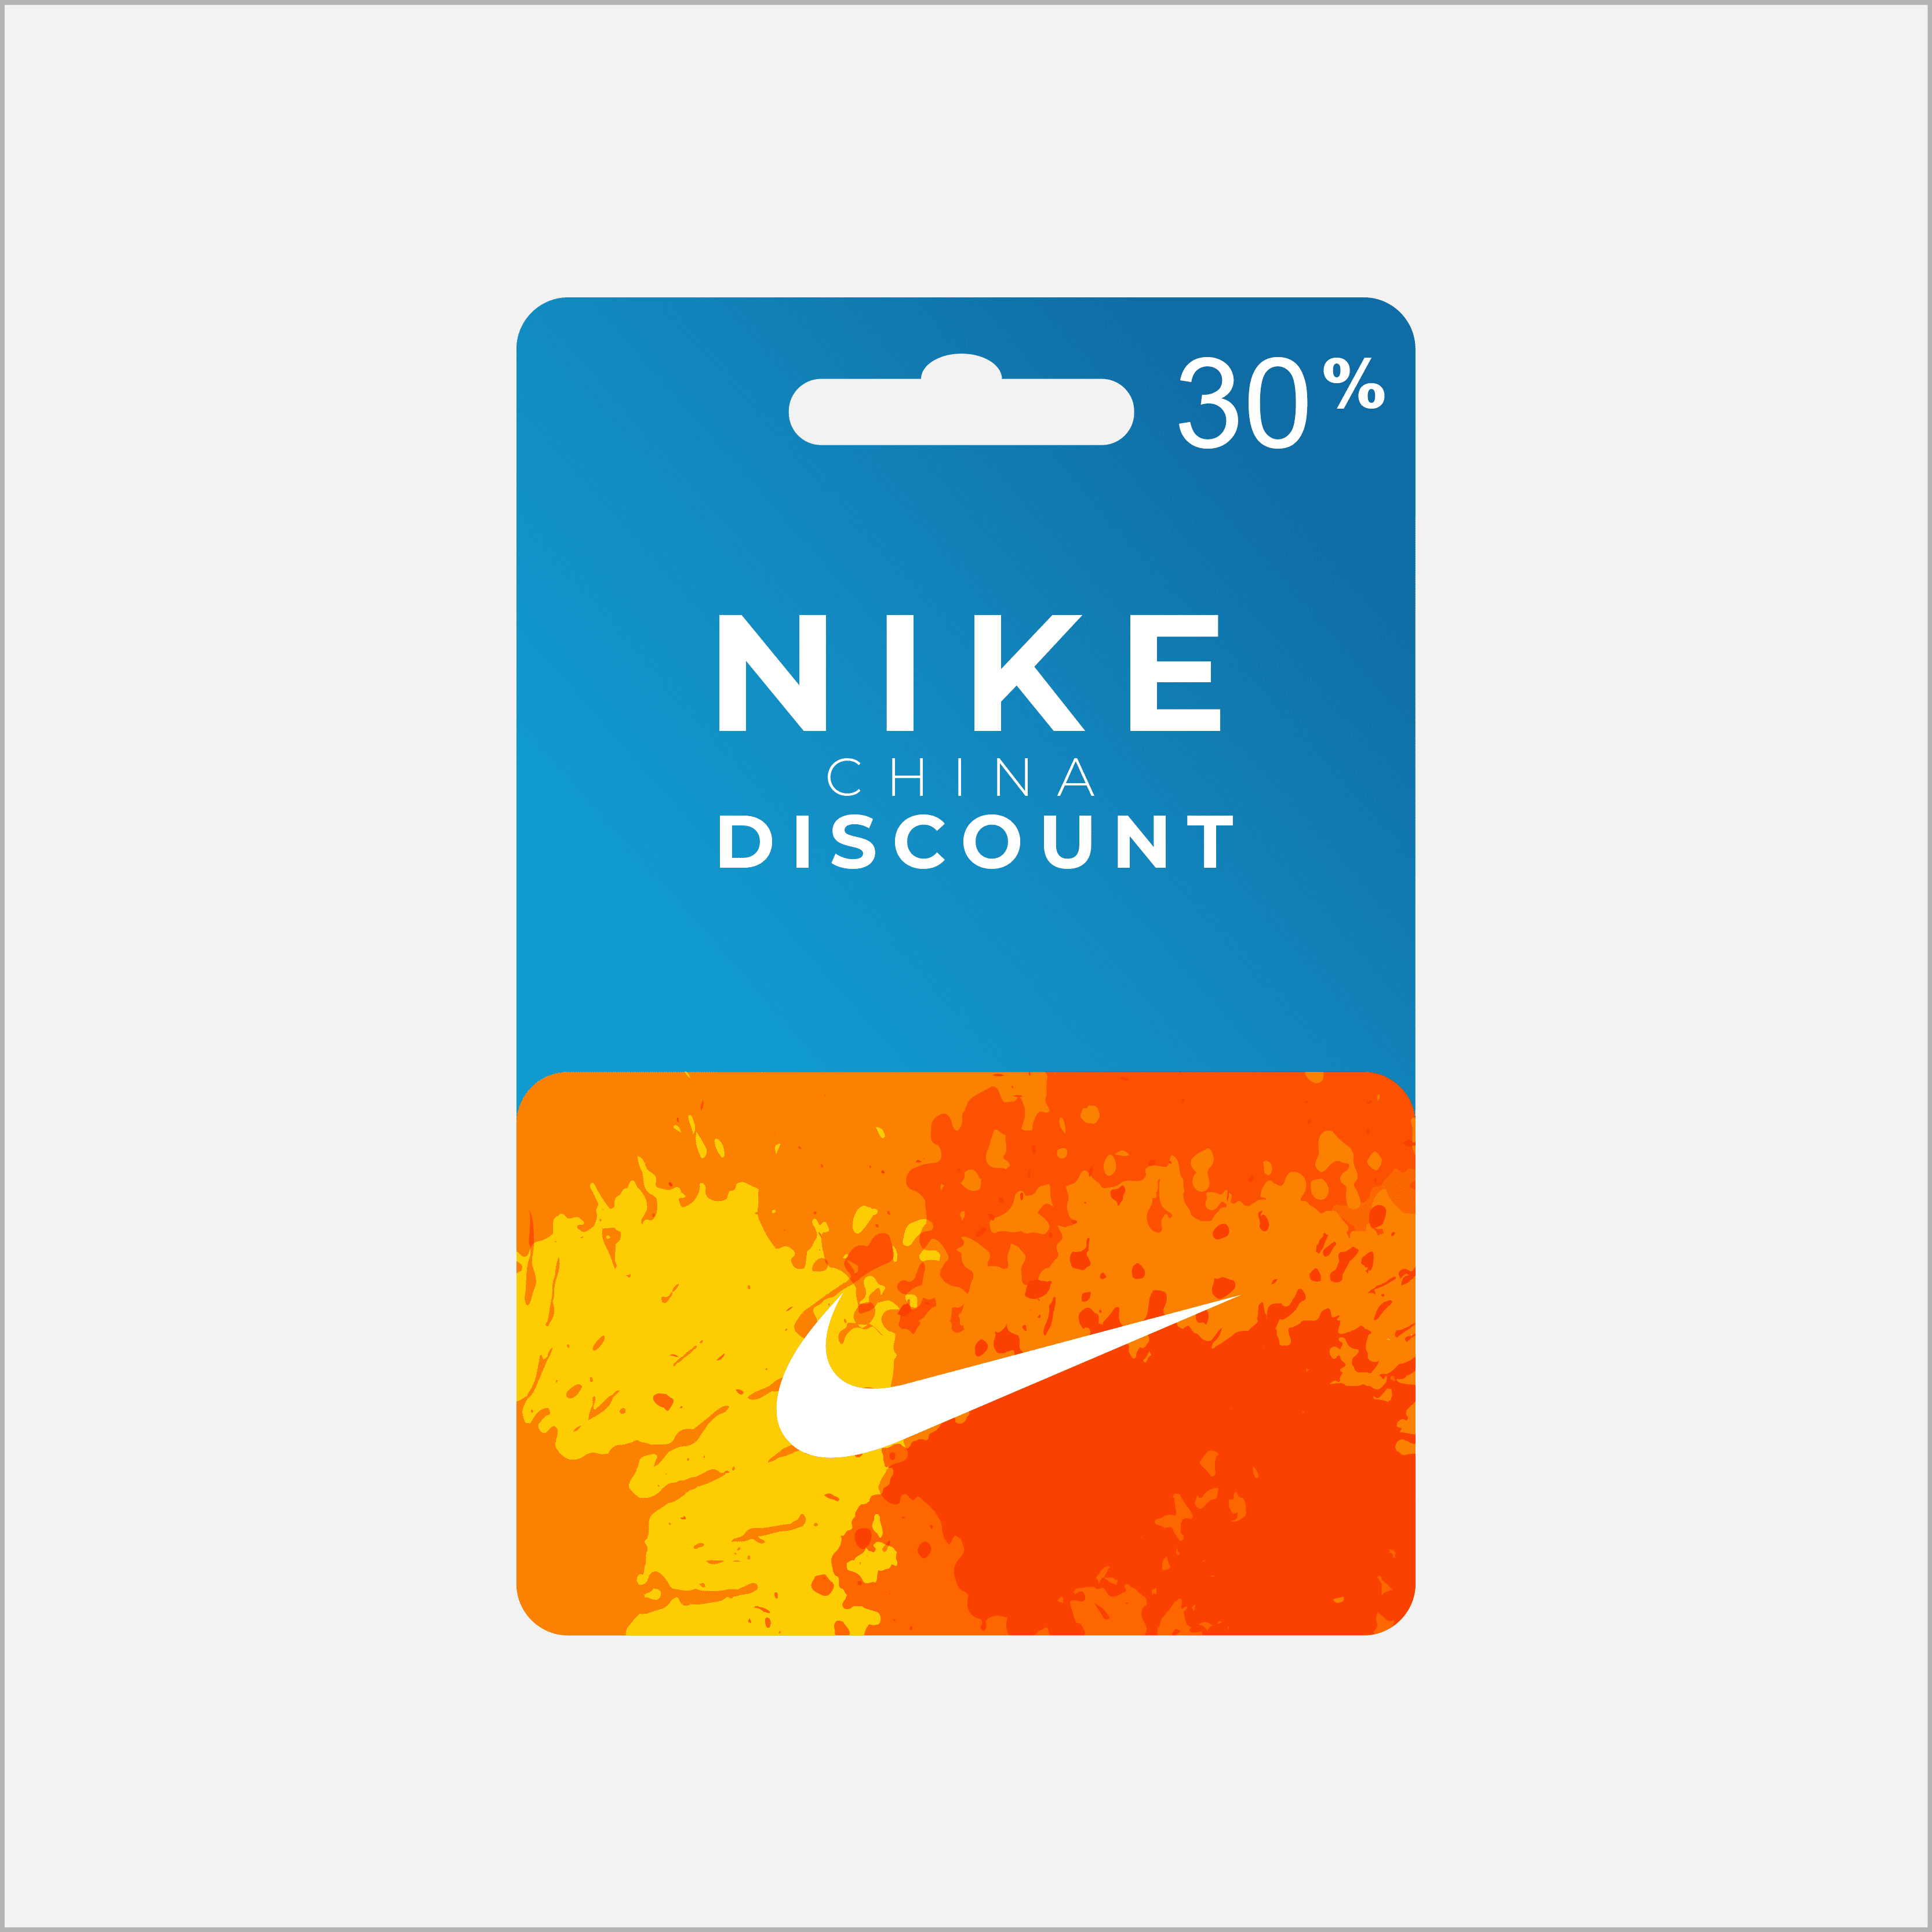 Nike China 30% discount code